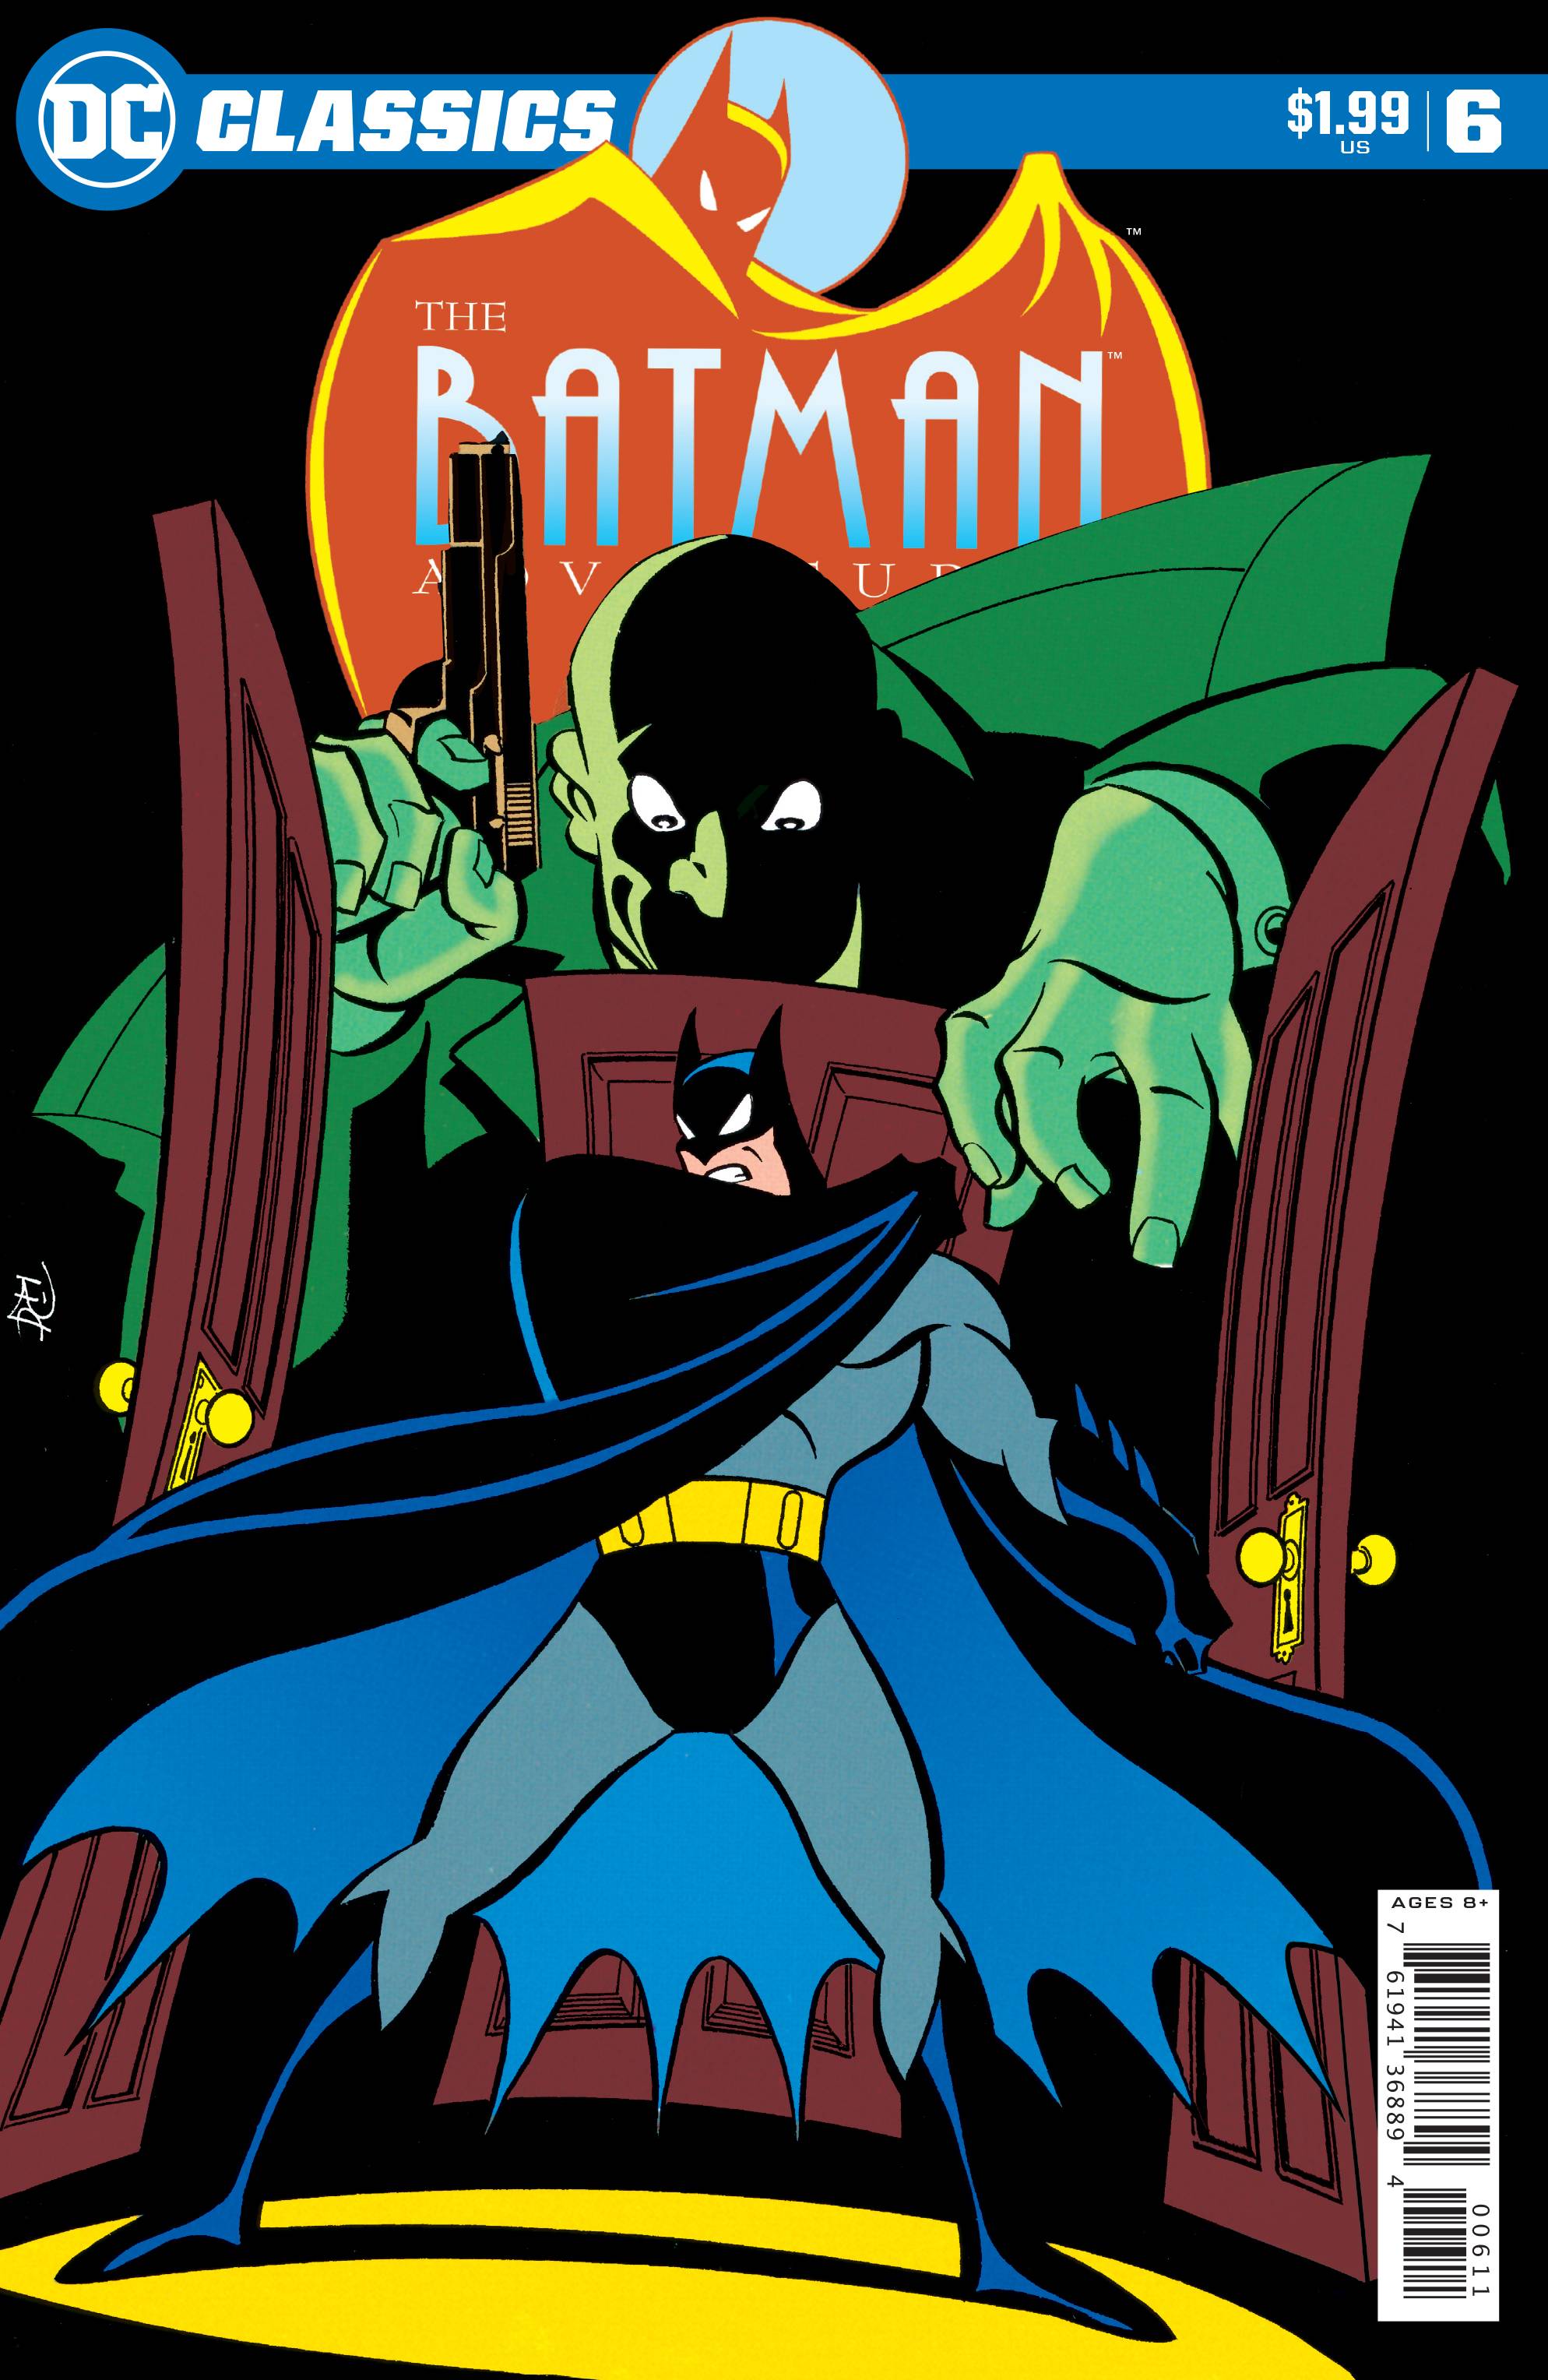 DC CLASSICS THE BATMAN ADVENTURES #6